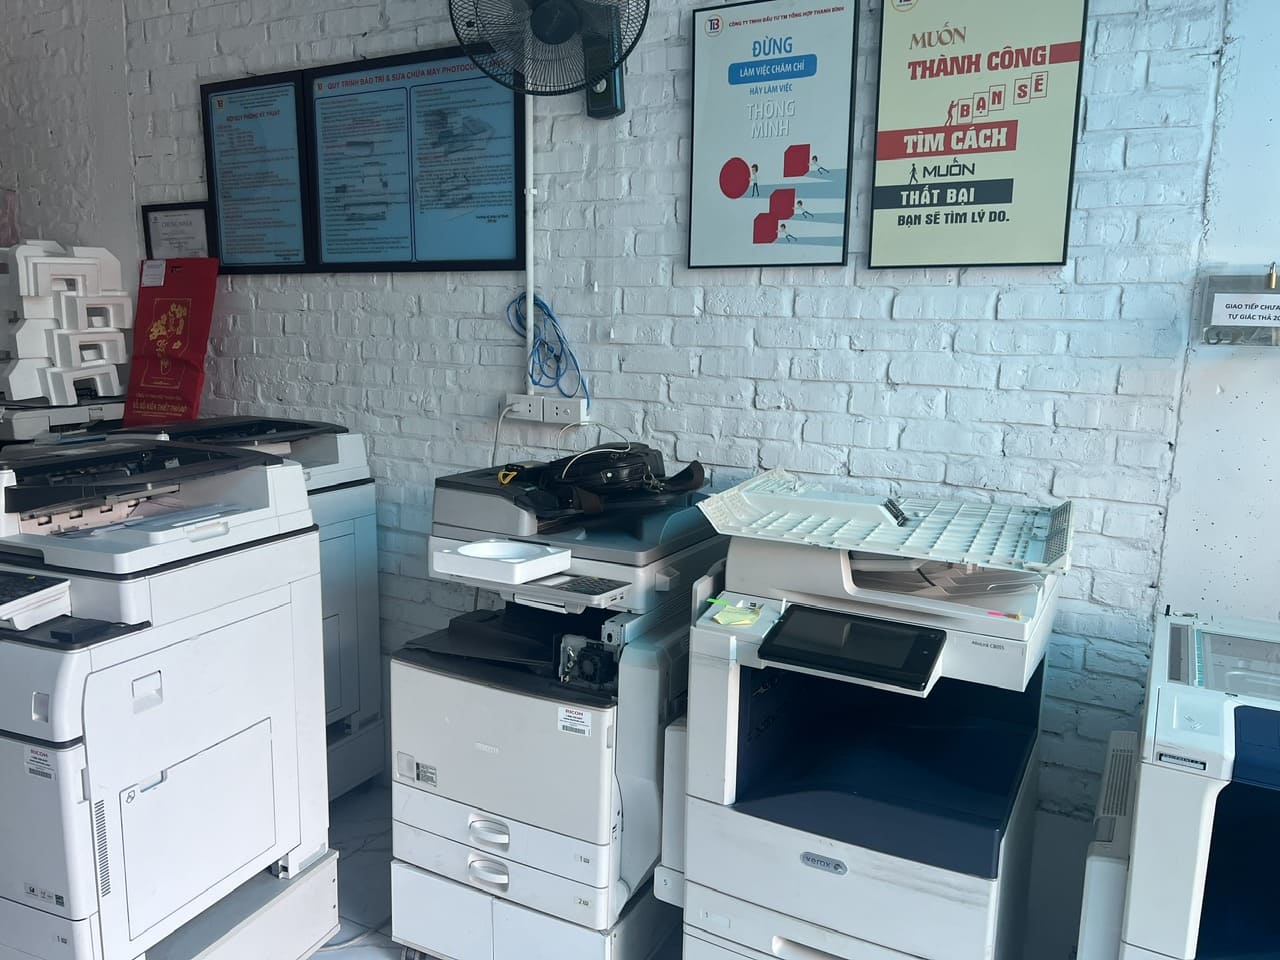 Báo giá Cho thuê máy photocopy tại Hà Nội chỉ từ 800k/tháng